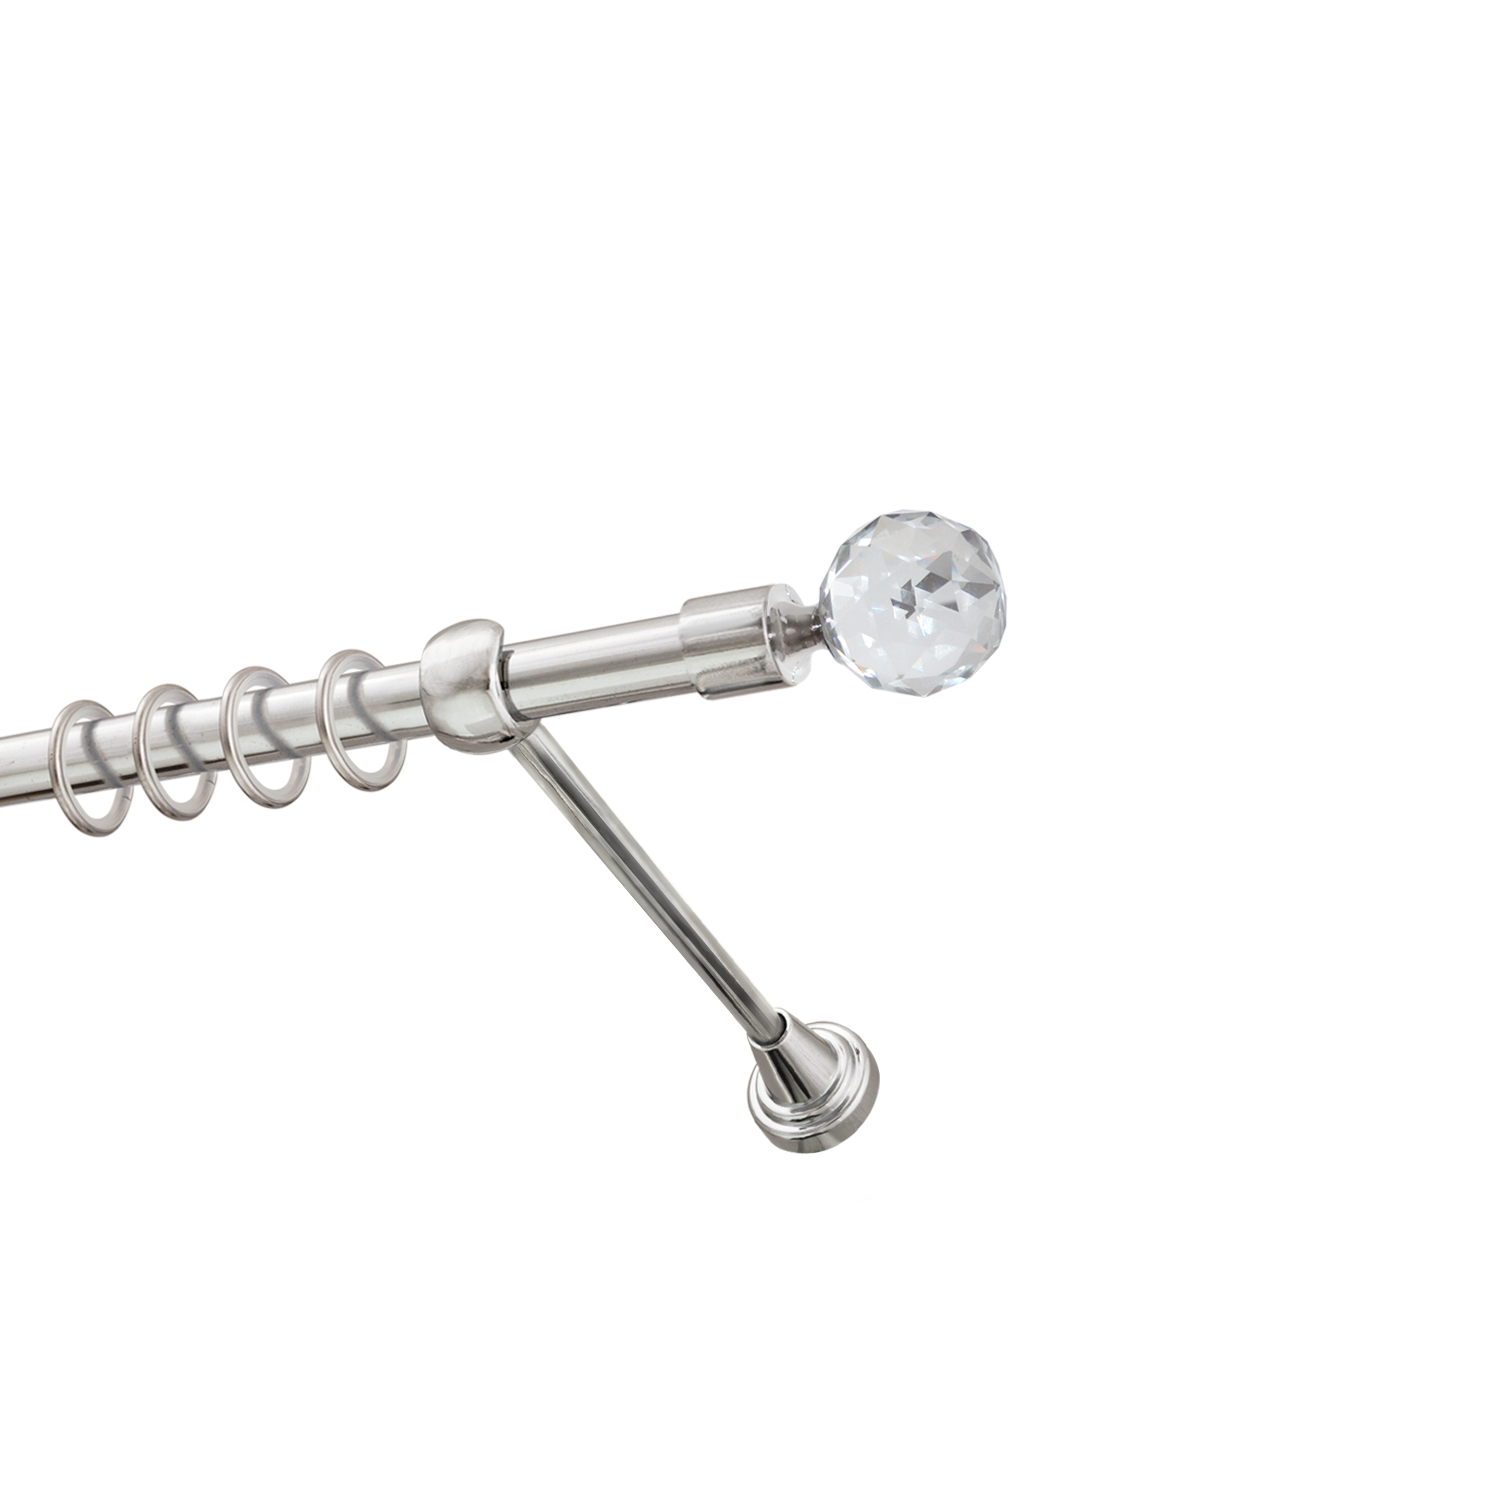 Металлический карниз для штор Карат, однорядный 16 мм, серебро, гладкая штанга, длина 140 см - фото Wikidecor.ru